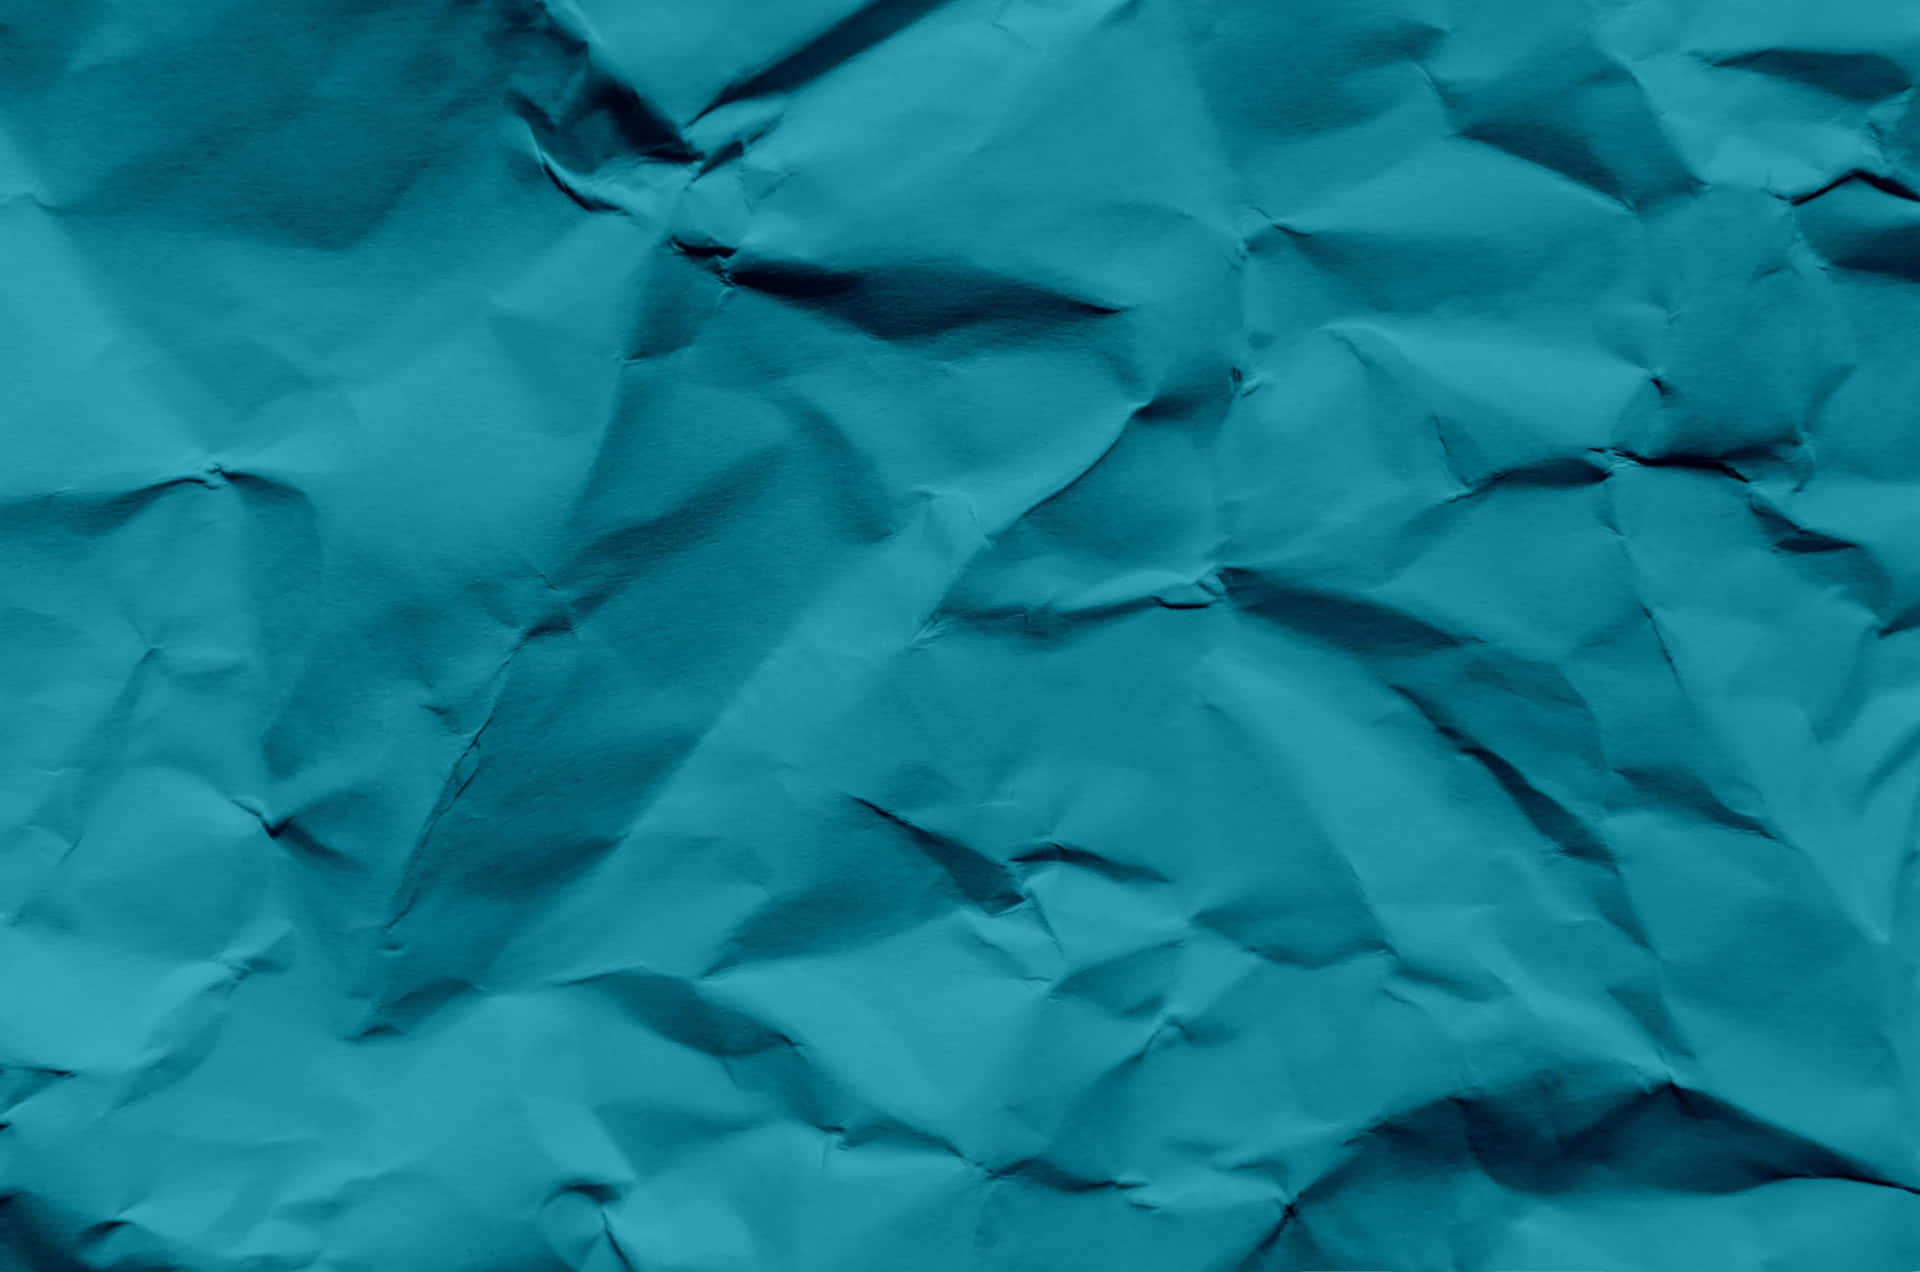 Enblått Tilltryckt Pappersbakgrund